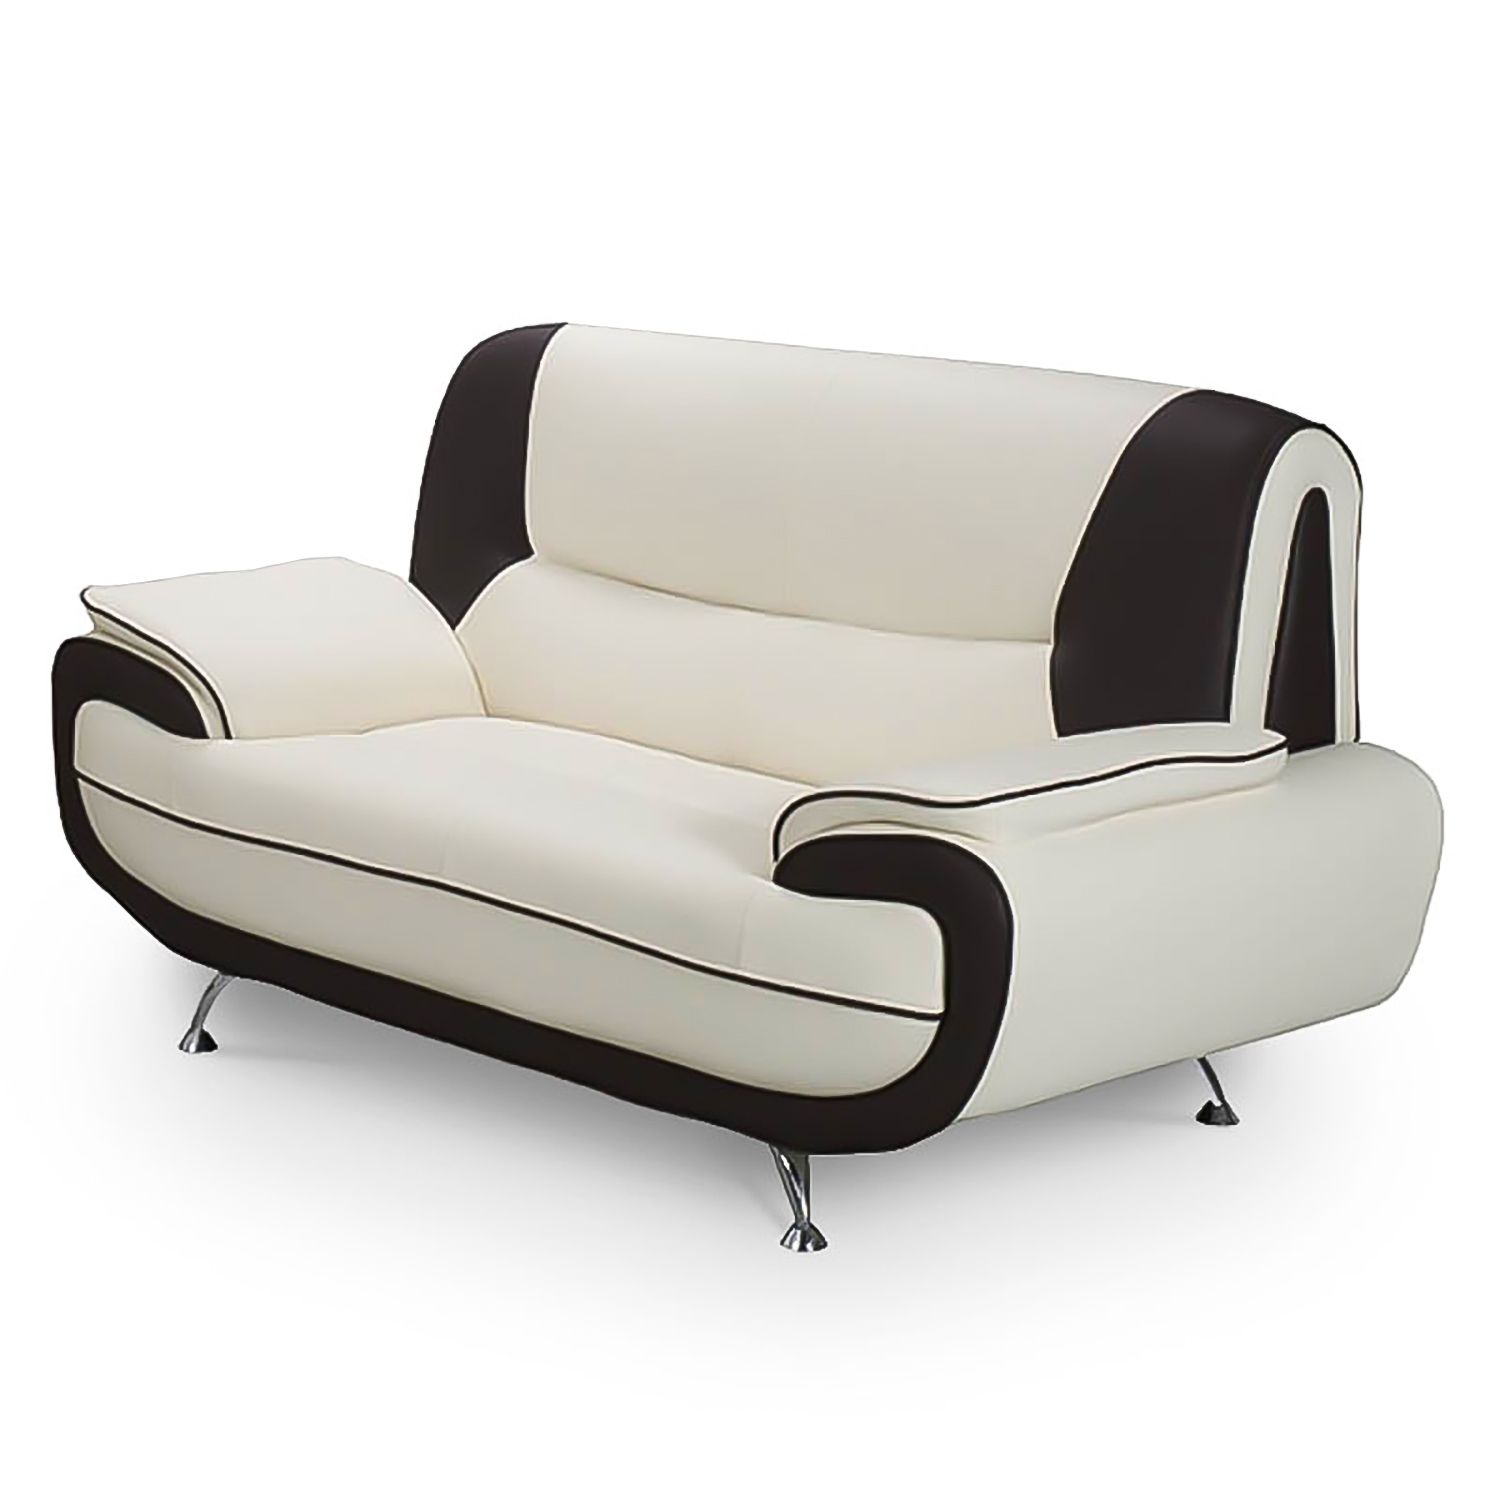 Canapé design 2 places en simili cuir blanc et noir